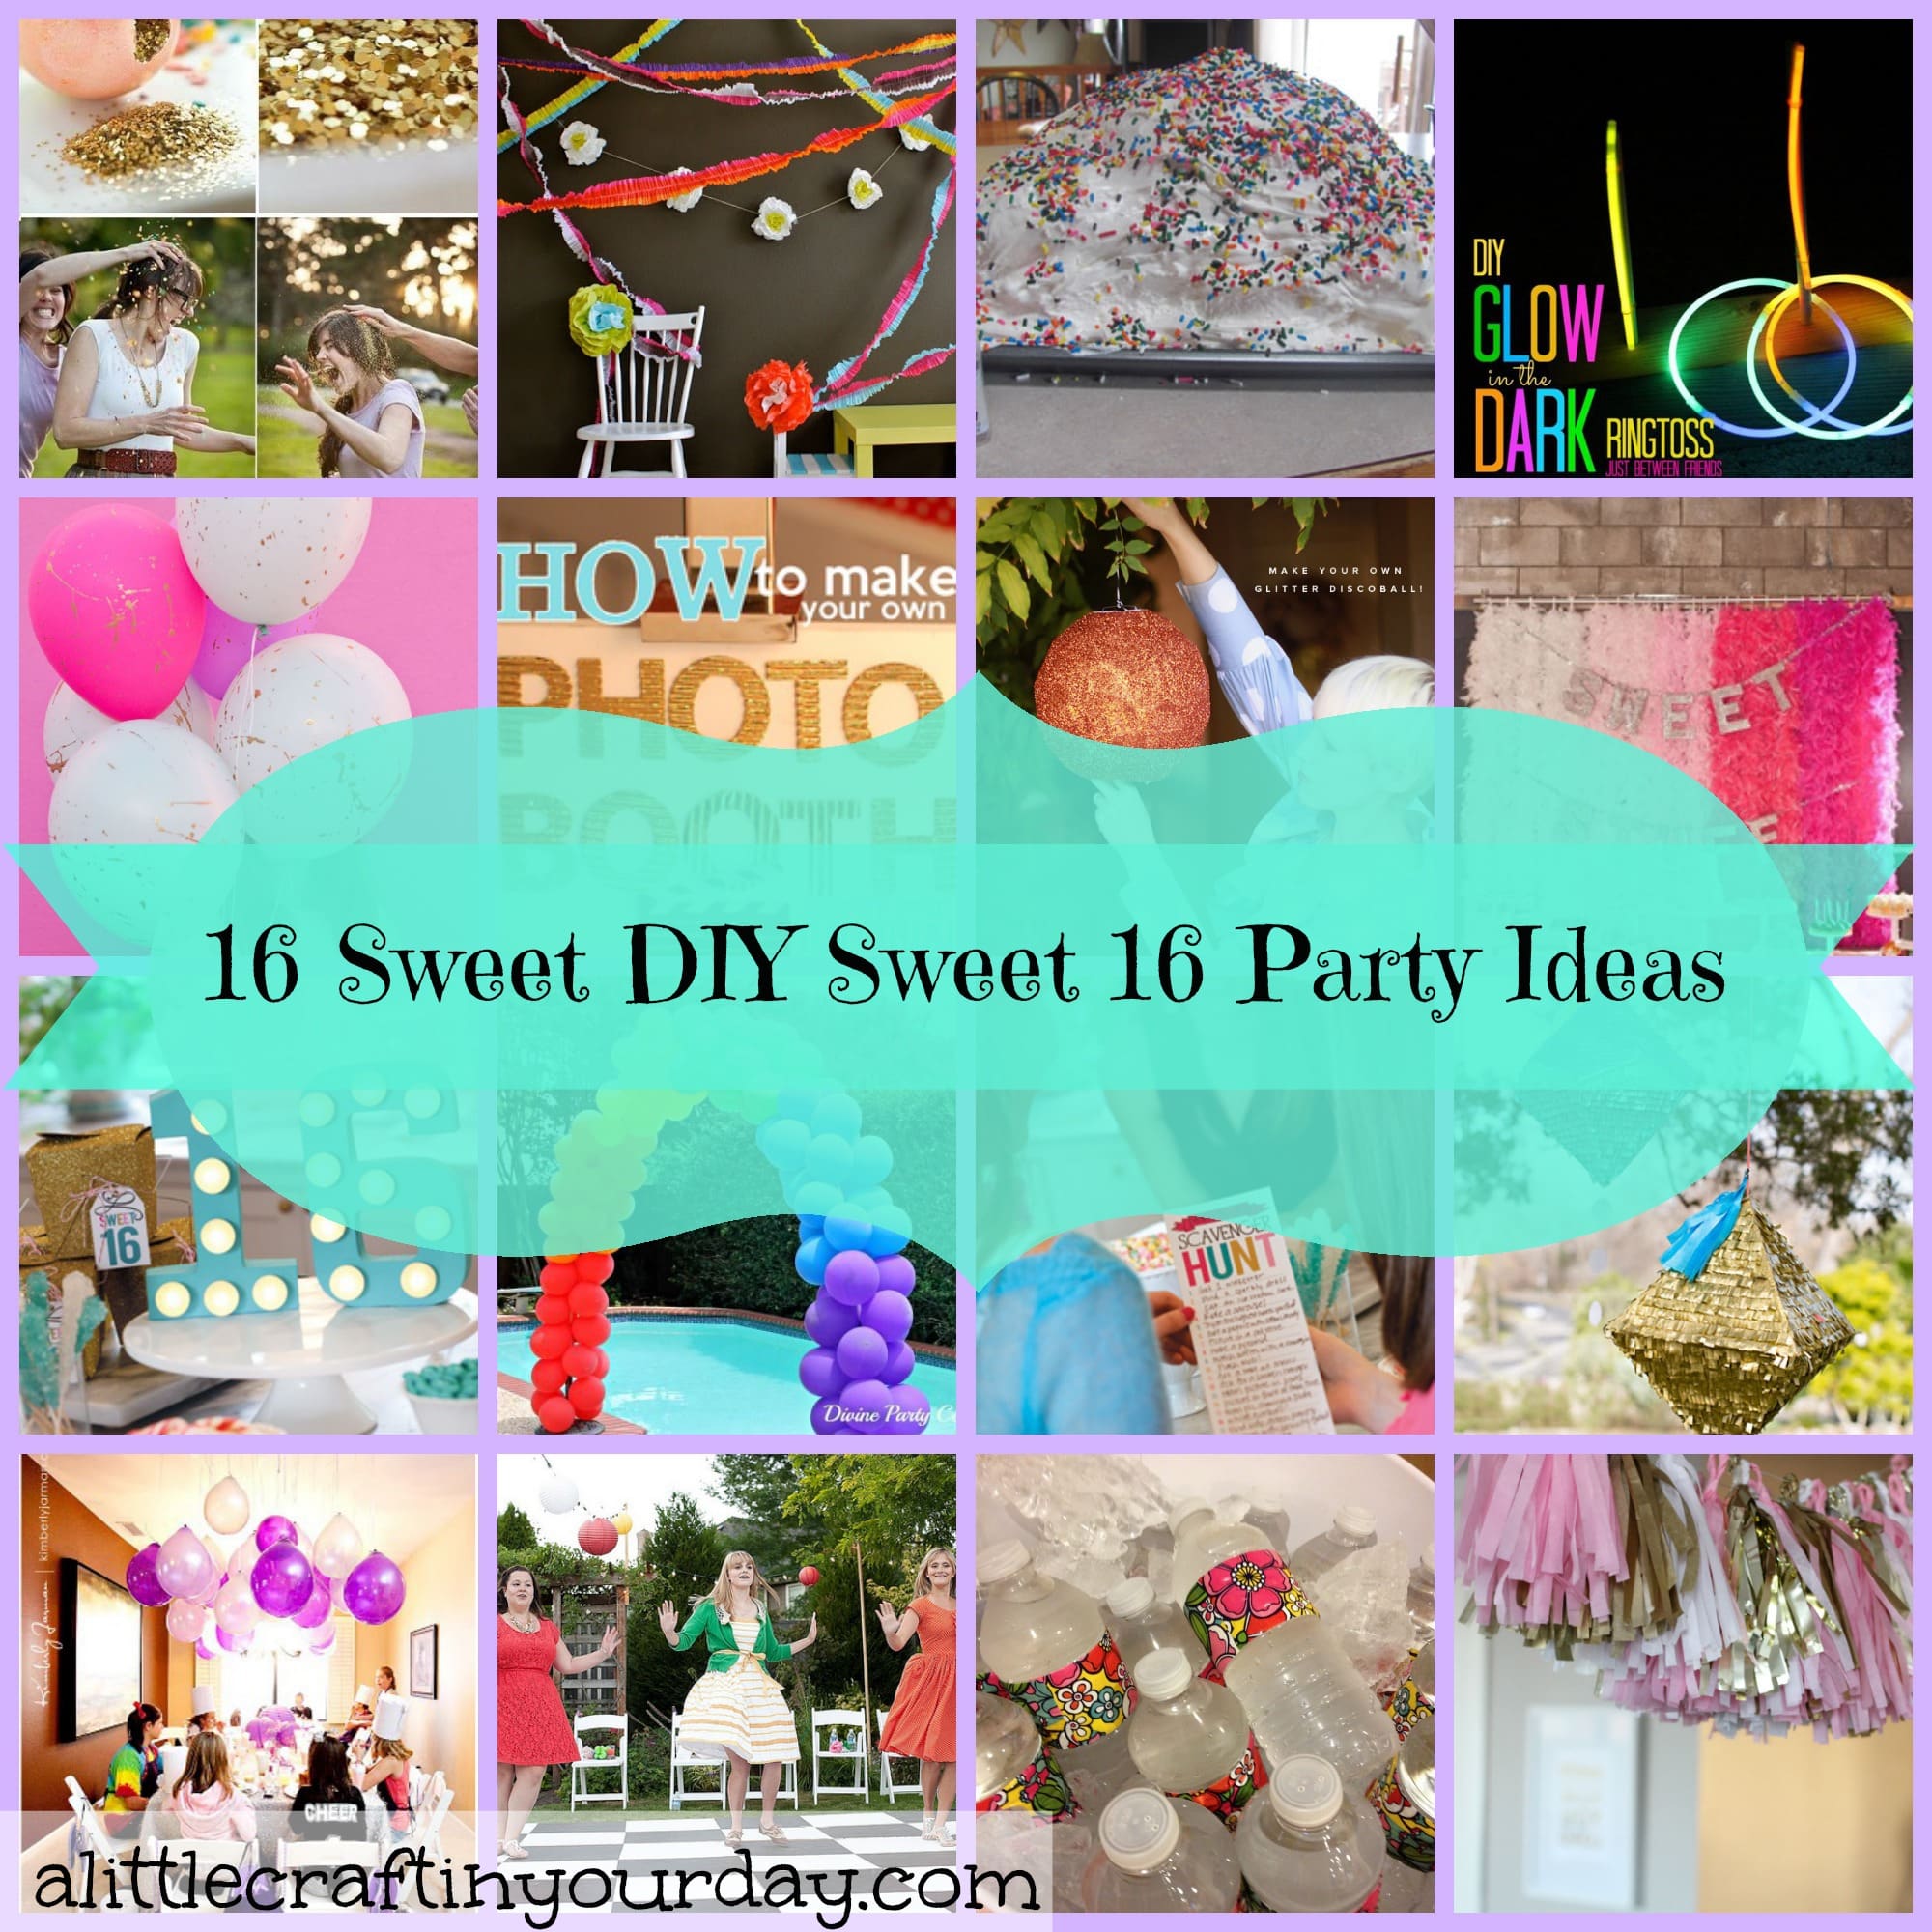 16 Sweet DIY Sweet 16 Party Ideas